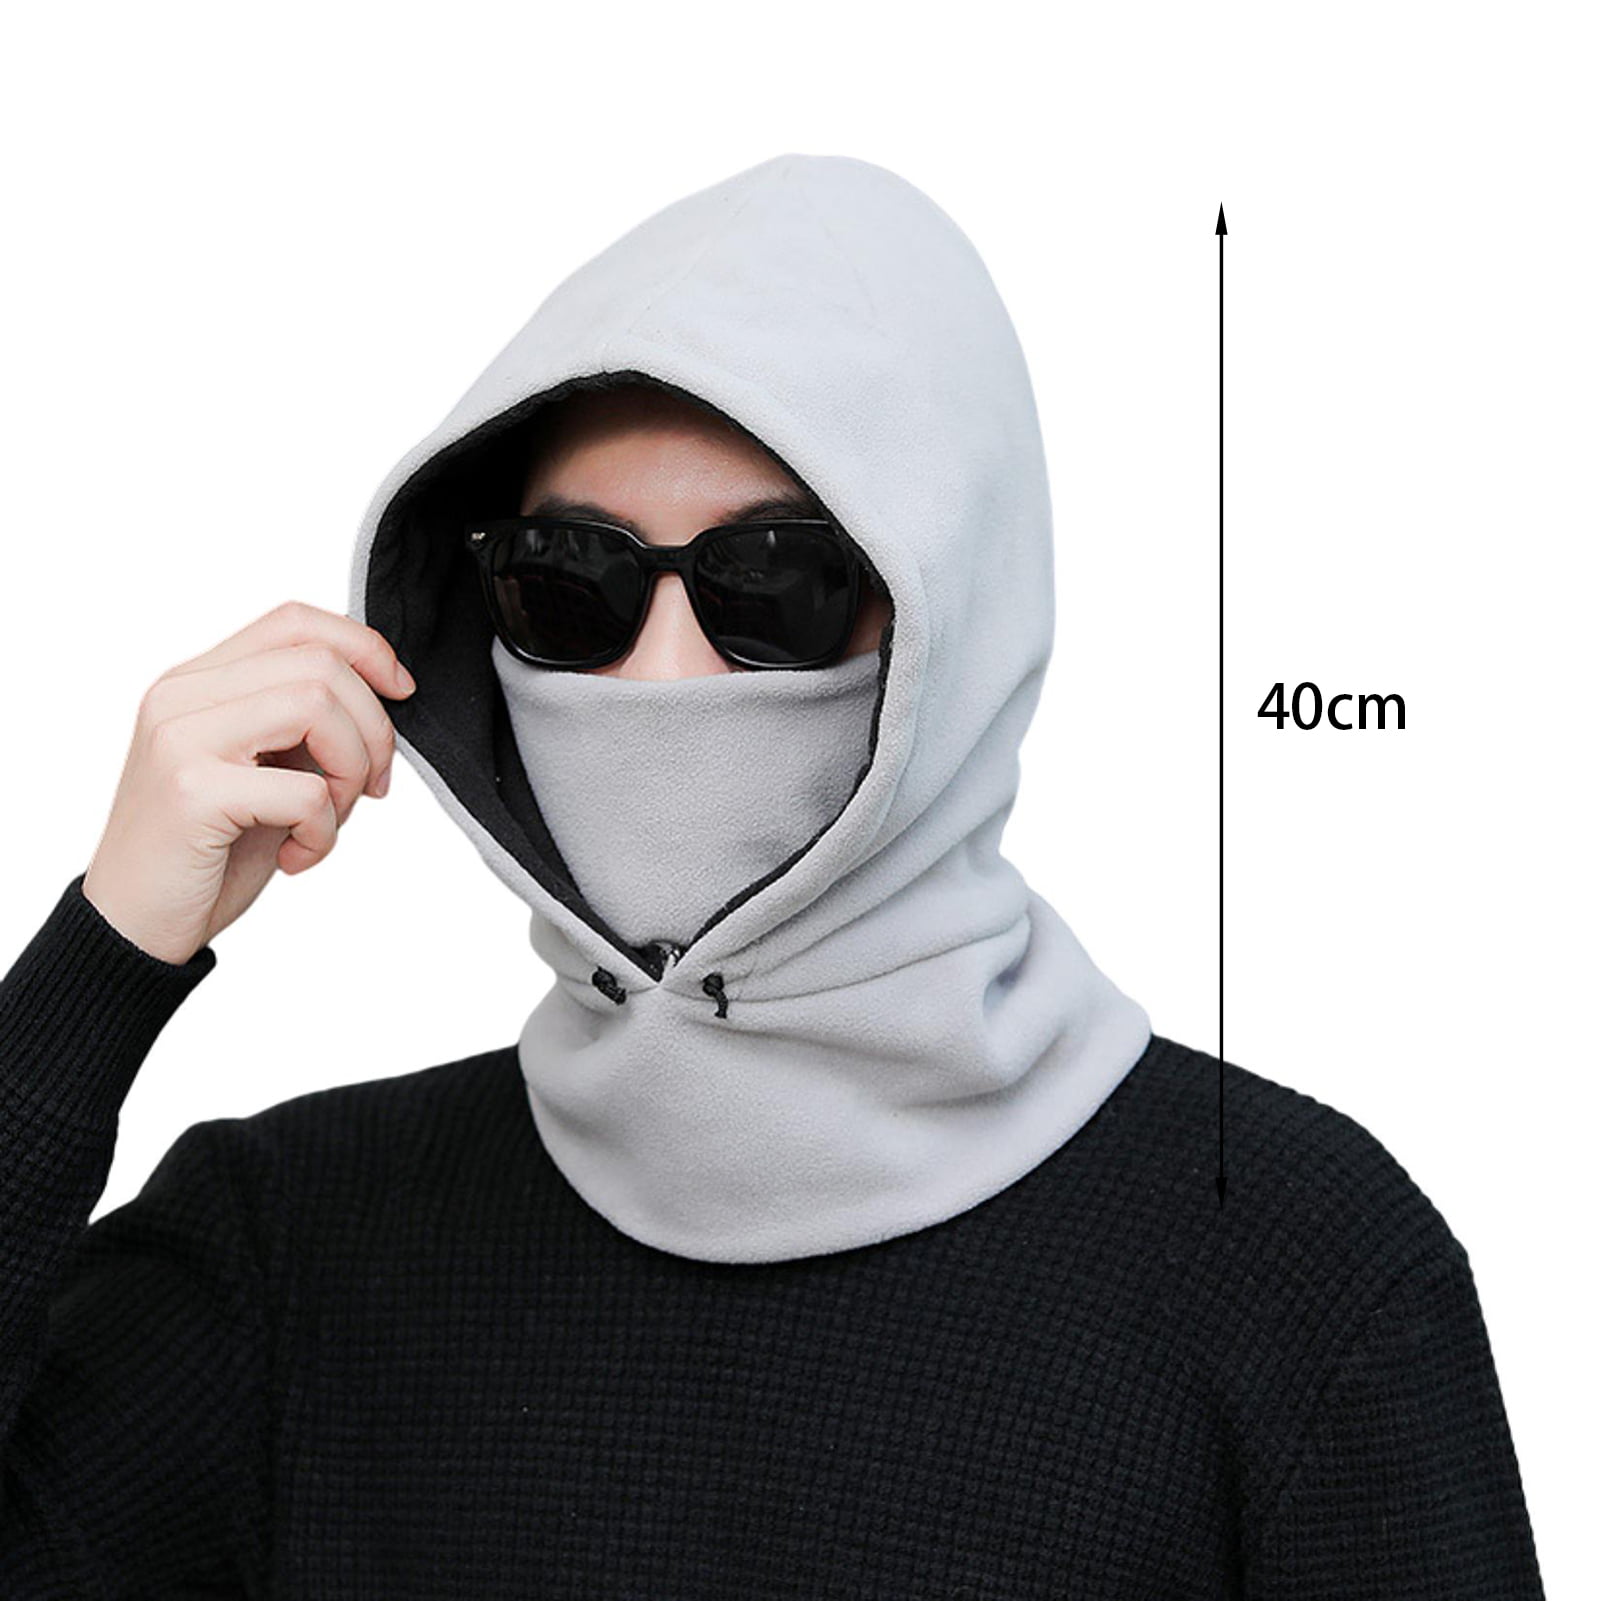 Balaclava Fleece Hood - Windproof Ski Mask - Heavyweight Cold